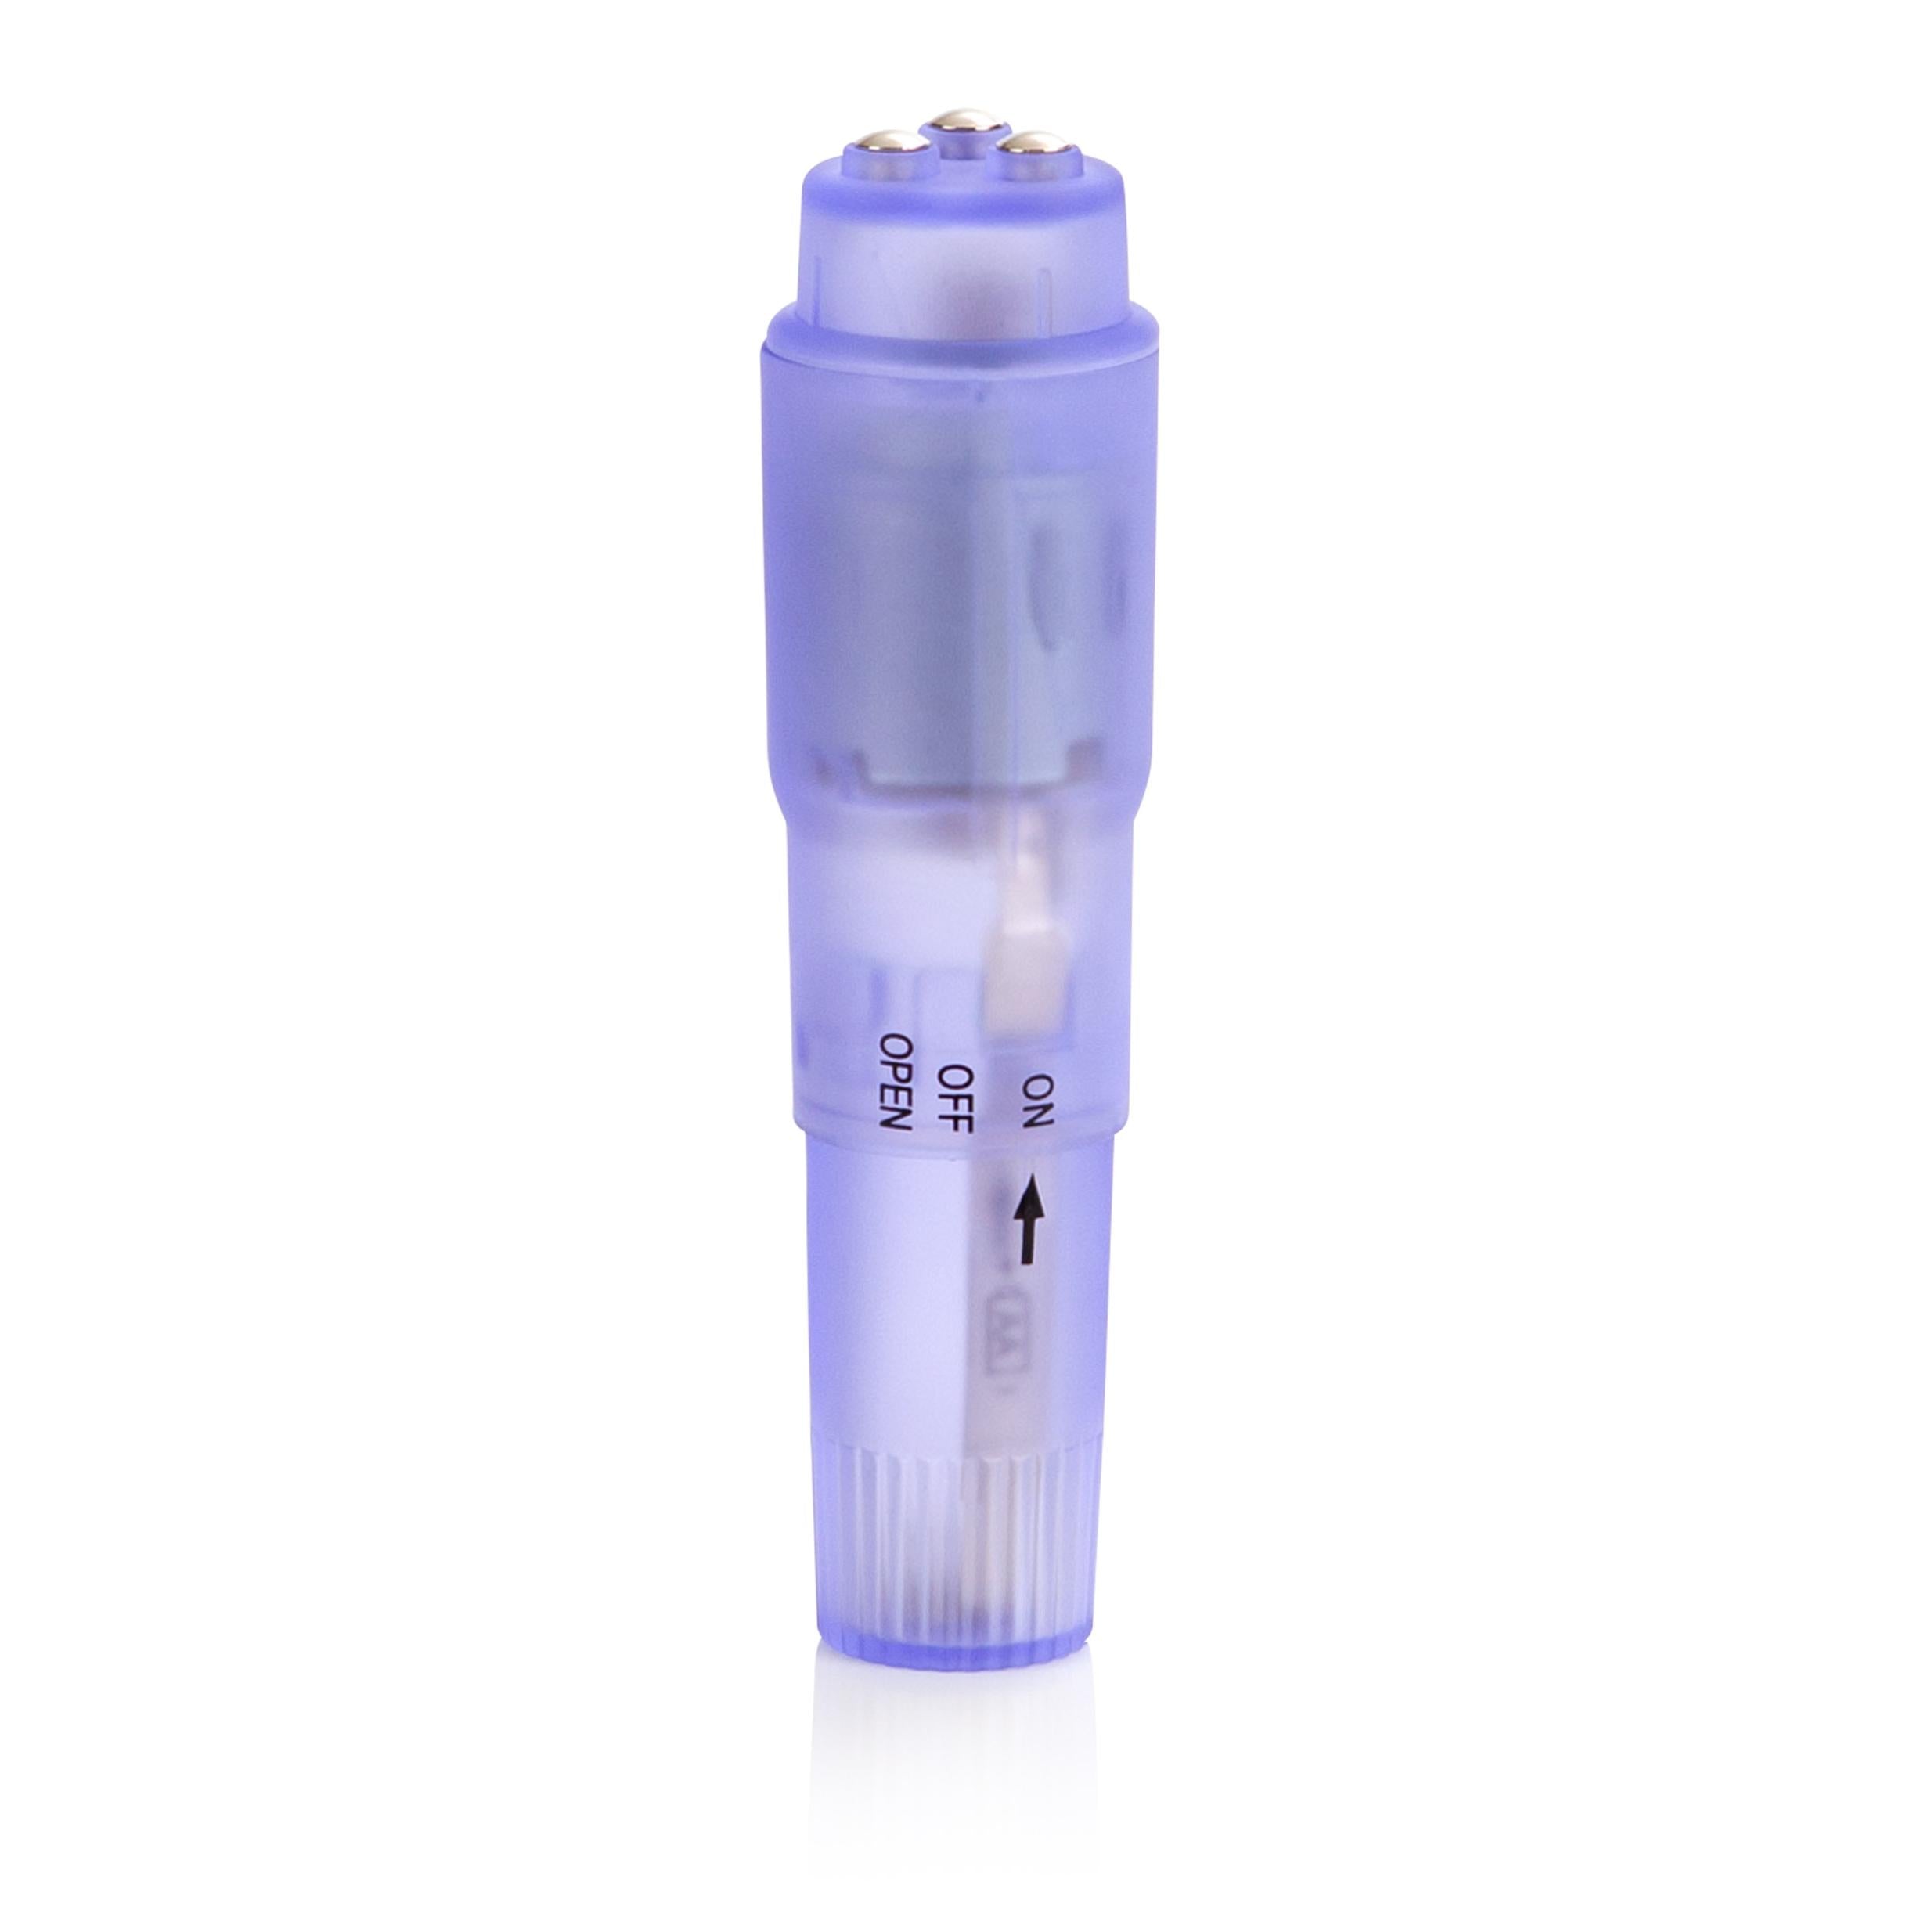 Travel Teaser Kit - CalExotics Vibrator Purple